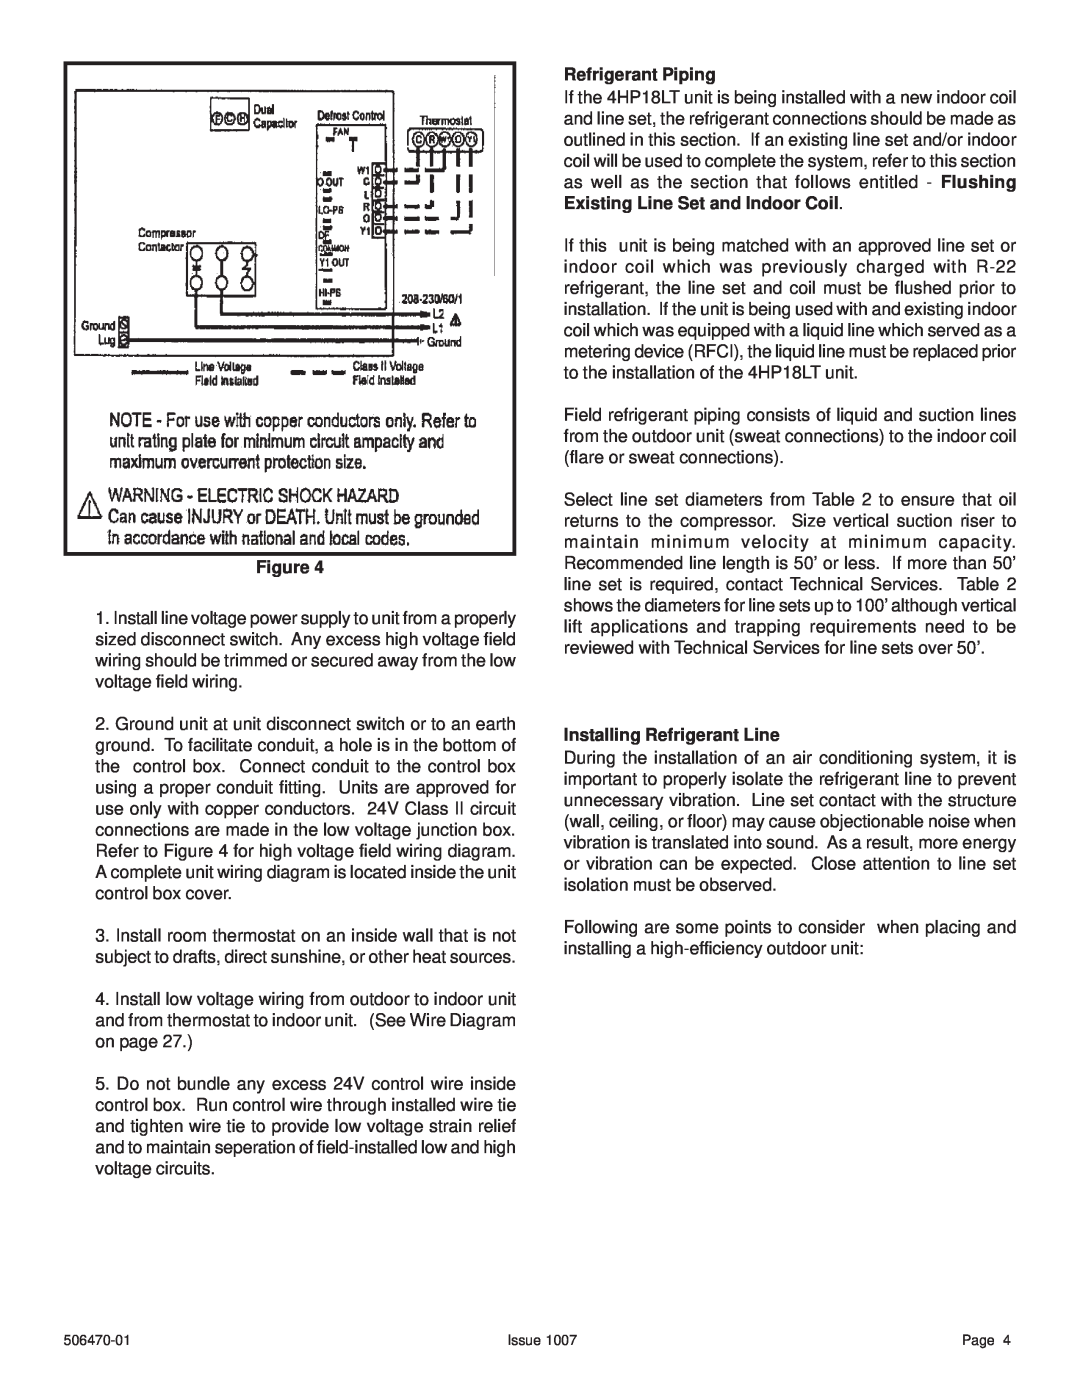 Lennox International Inc 4HP18LT manual Refrigerant Piping, Installing Refrigerant Line 